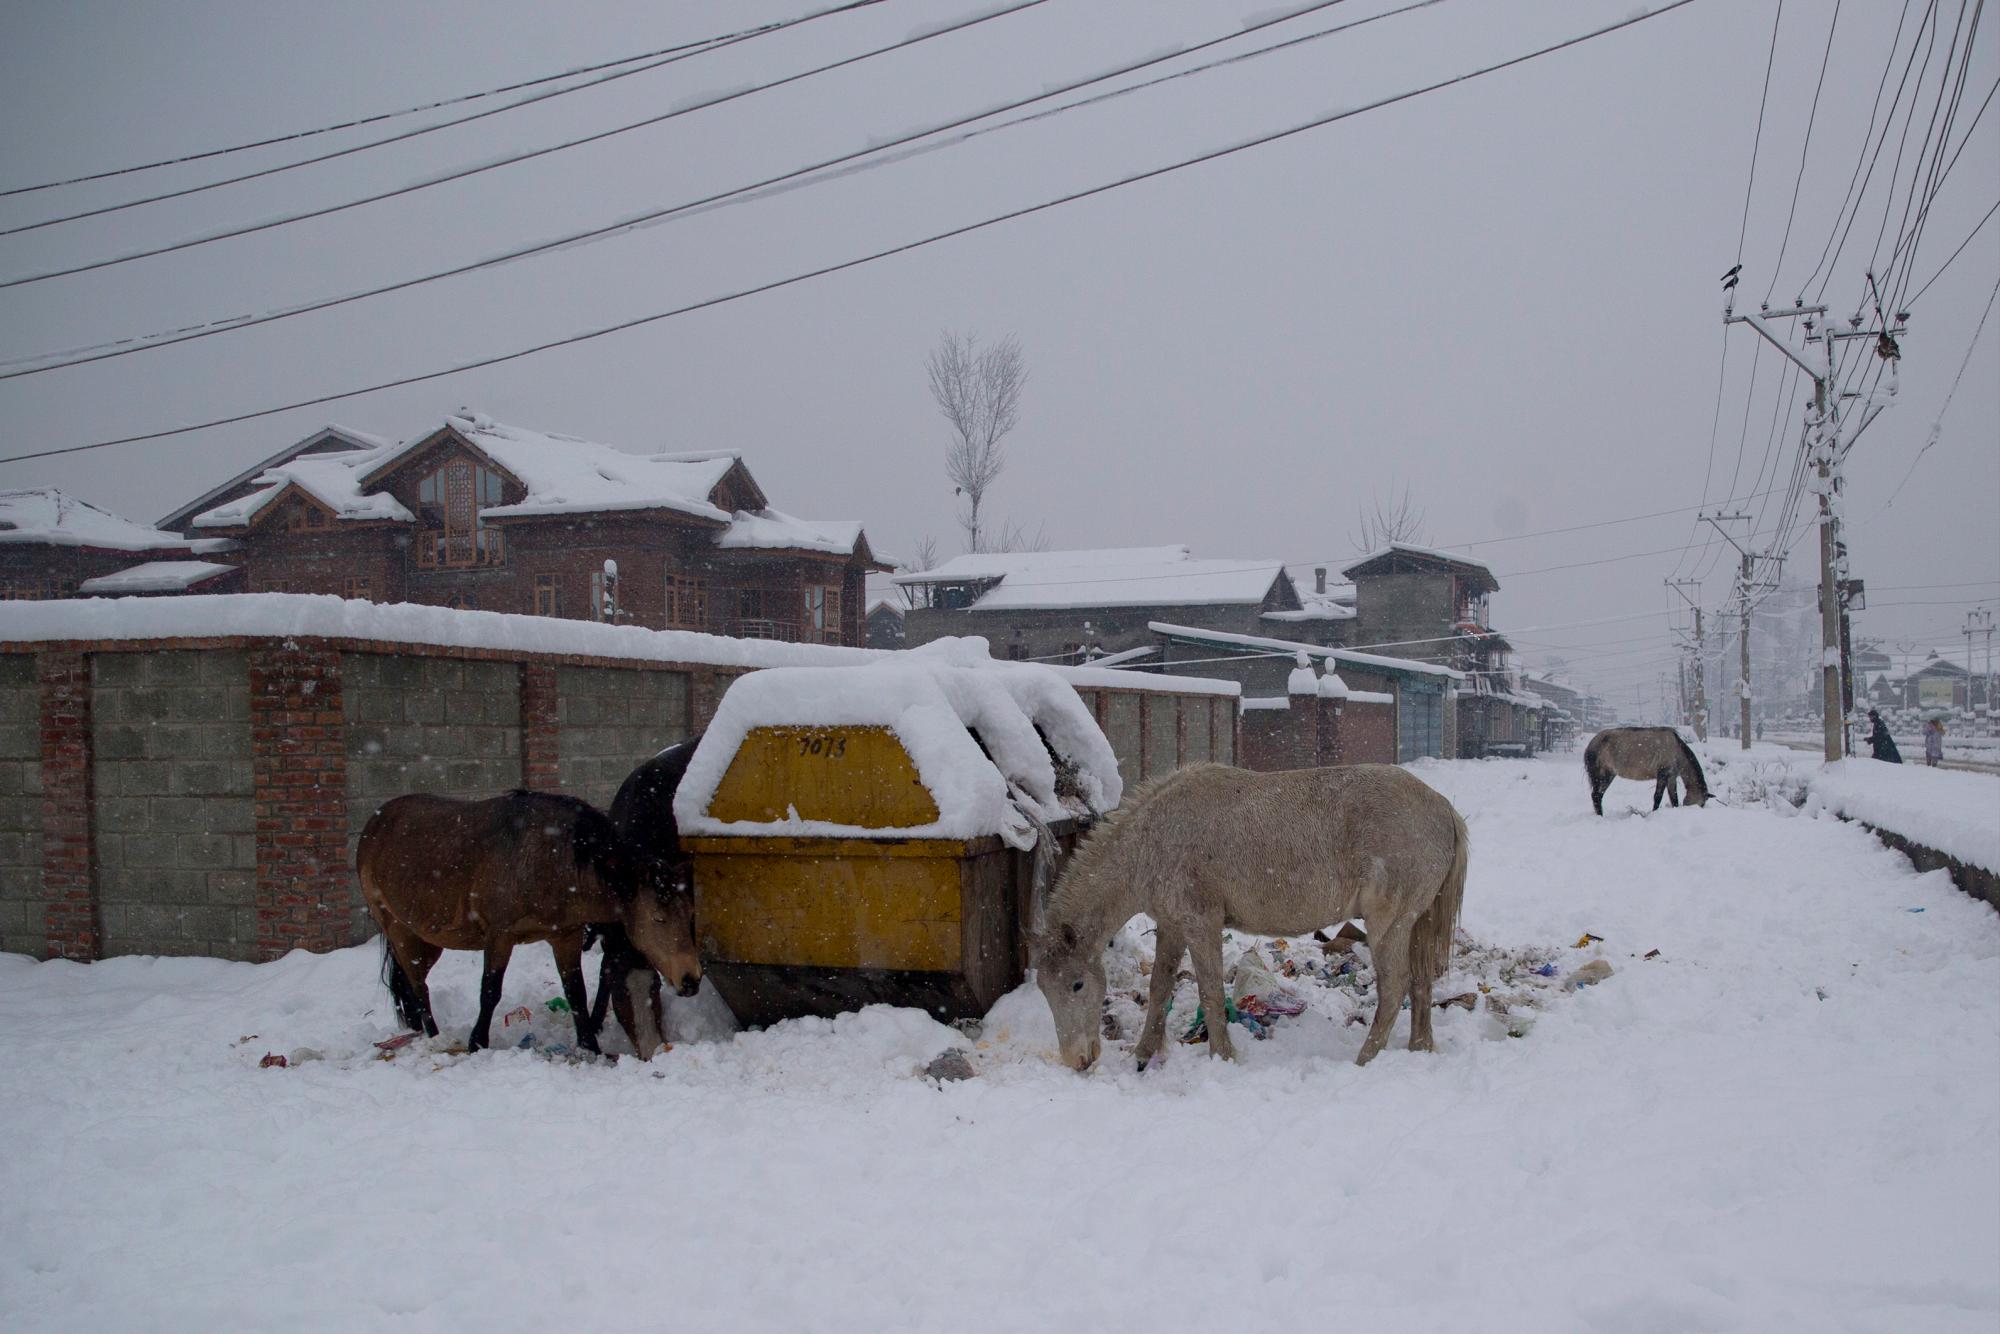 Los caballos buscan comestibles junto a un contenedor de basura en un camino cubierto de nieve en las afueras de Srinagar, Cachemira controlada por los indios, sábado 5 de enero de 2019. La región de Cachemira ha estado experimentando nieve durante algunos días, lo que ha provocado una interrupción del tráfico aéreo y Tráfico por carretera entre Srinagar y Jammu, las capitales de verano e invierno del estado problemático de la India.